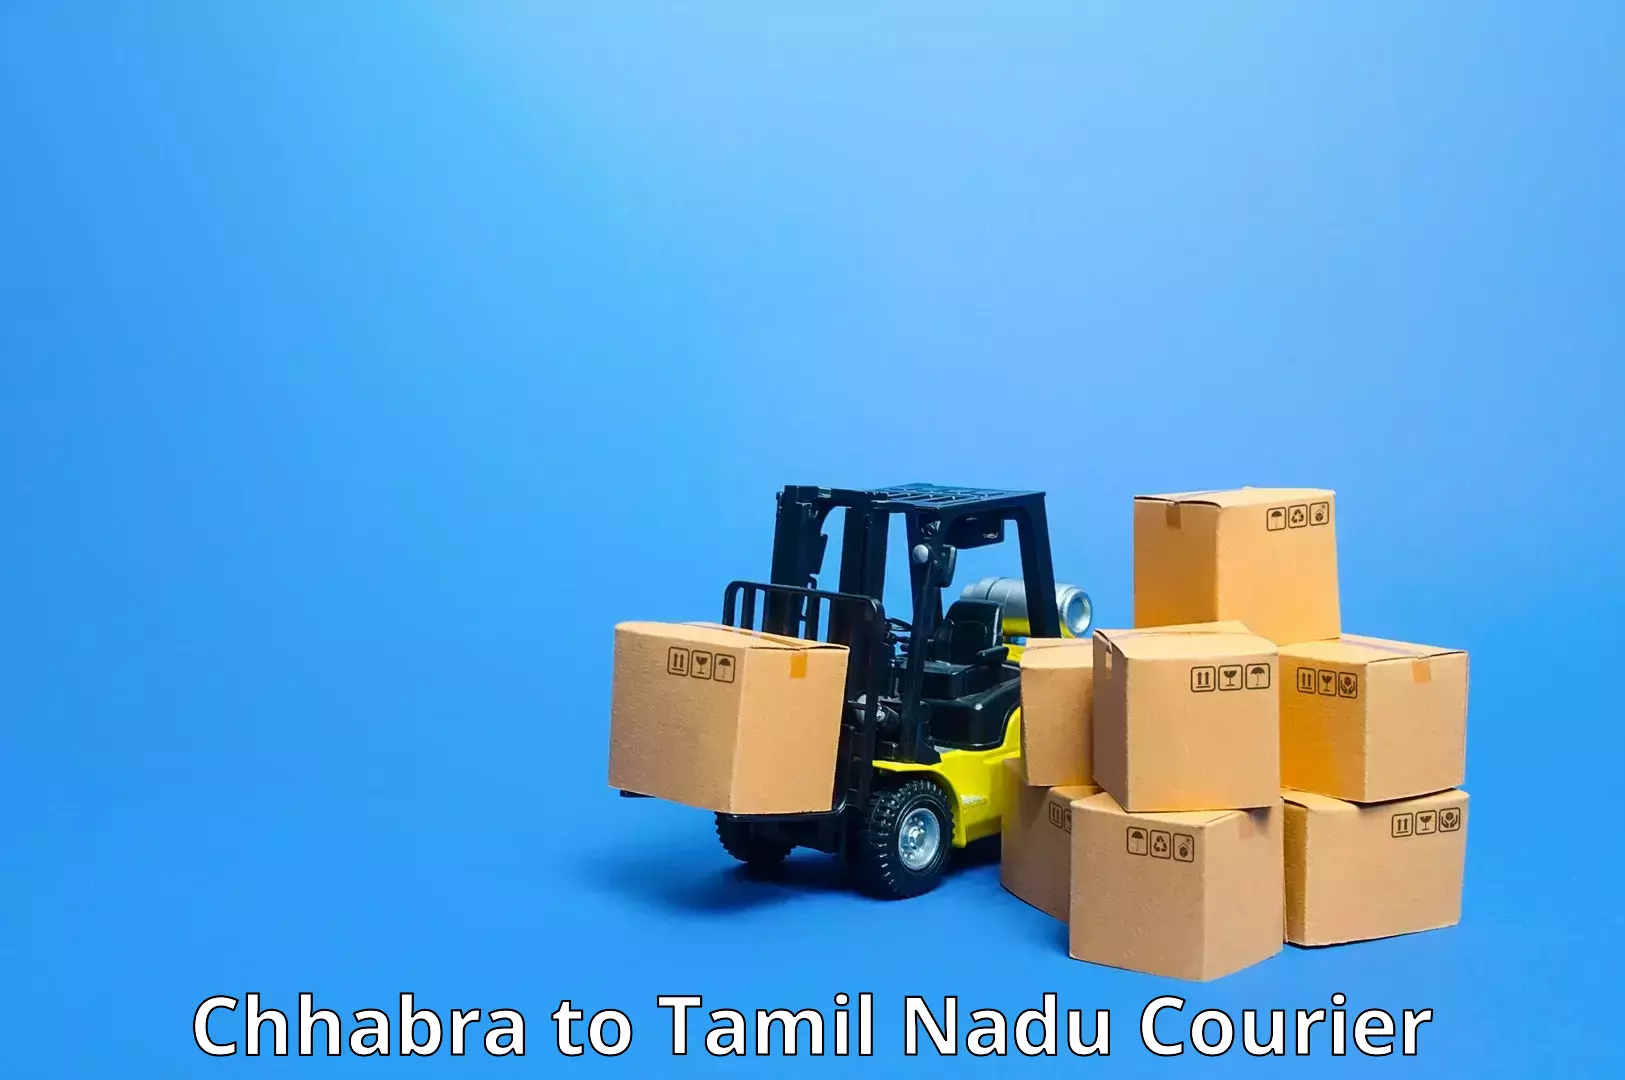 Cost-effective courier solutions Chhabra to Amrita Vishwa Vidyapeetham Coimbatore